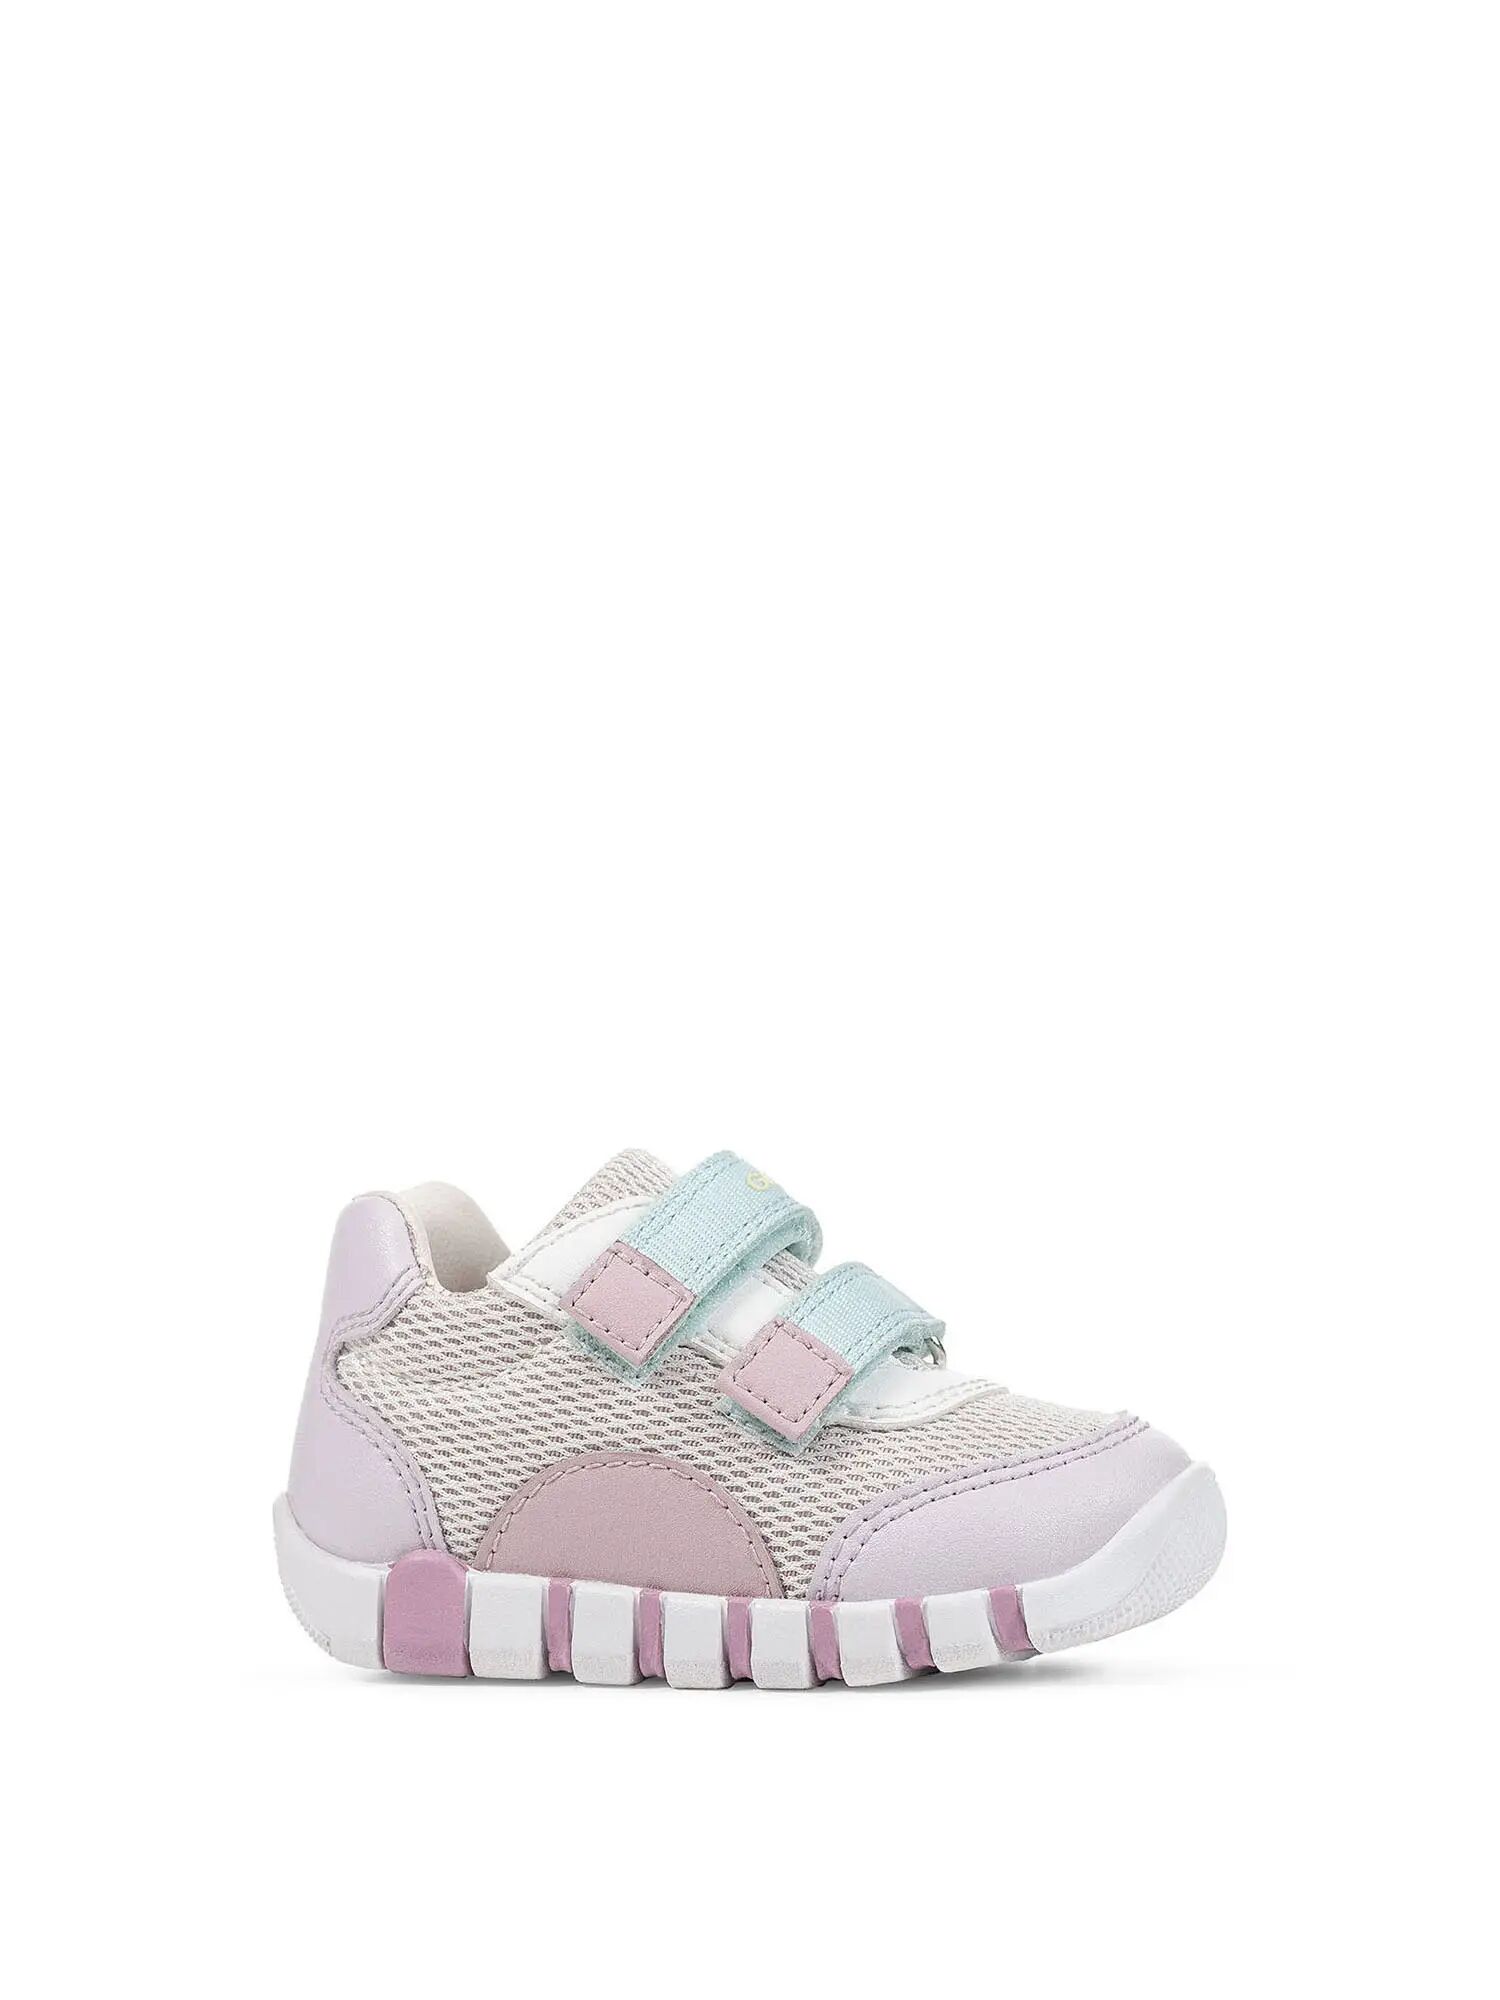 Geox Sneakers Bambina Colore Rosa/lilla ROSA/LILLA 19